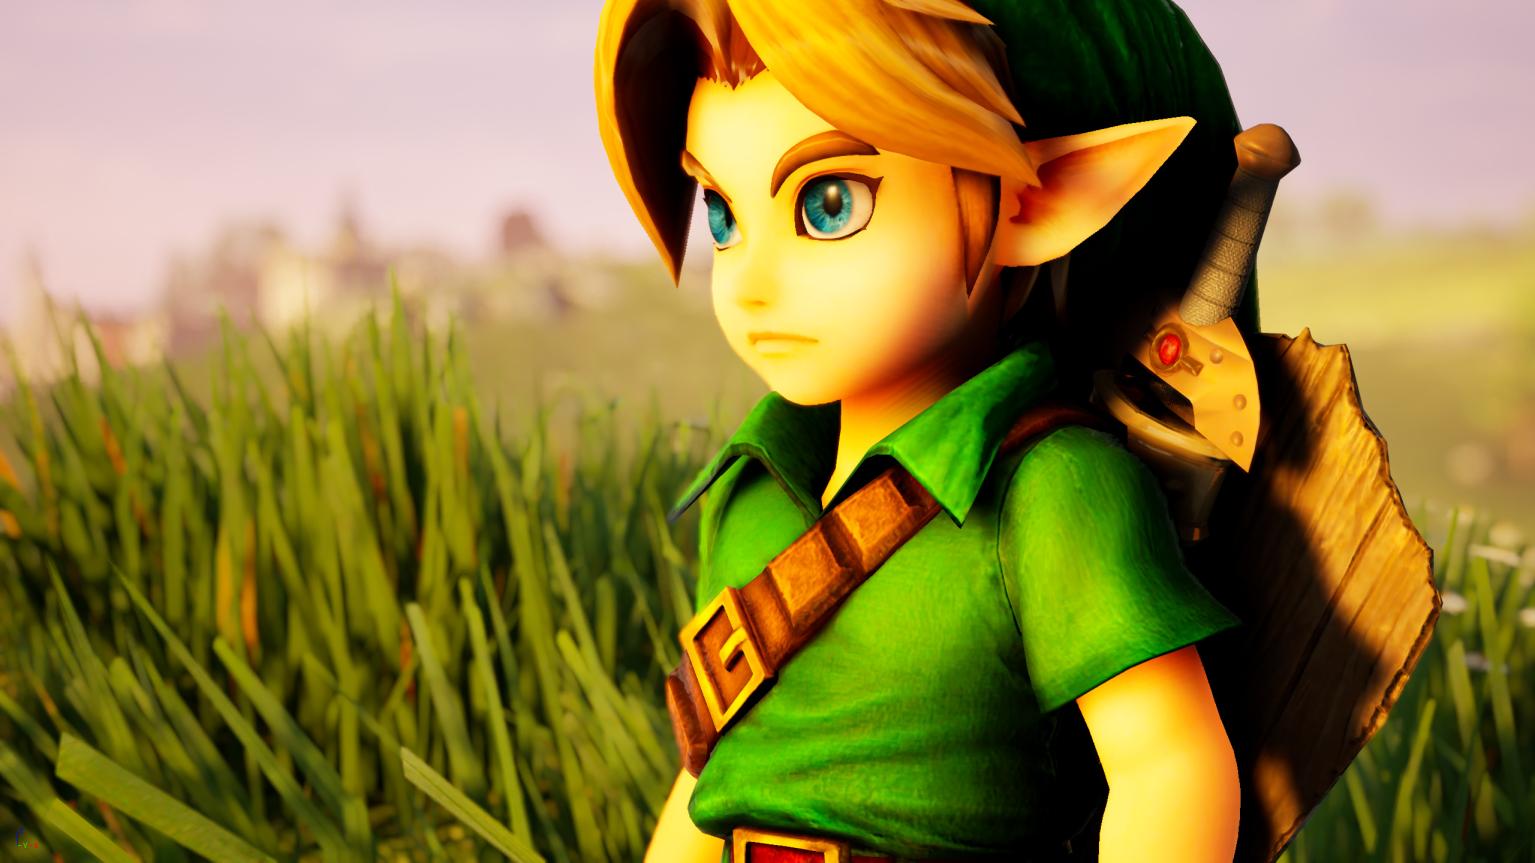 The Legend of Zelda Ocarina Of Time Remake di Unreal Engine 4.25 dipamerkan dalam video baru